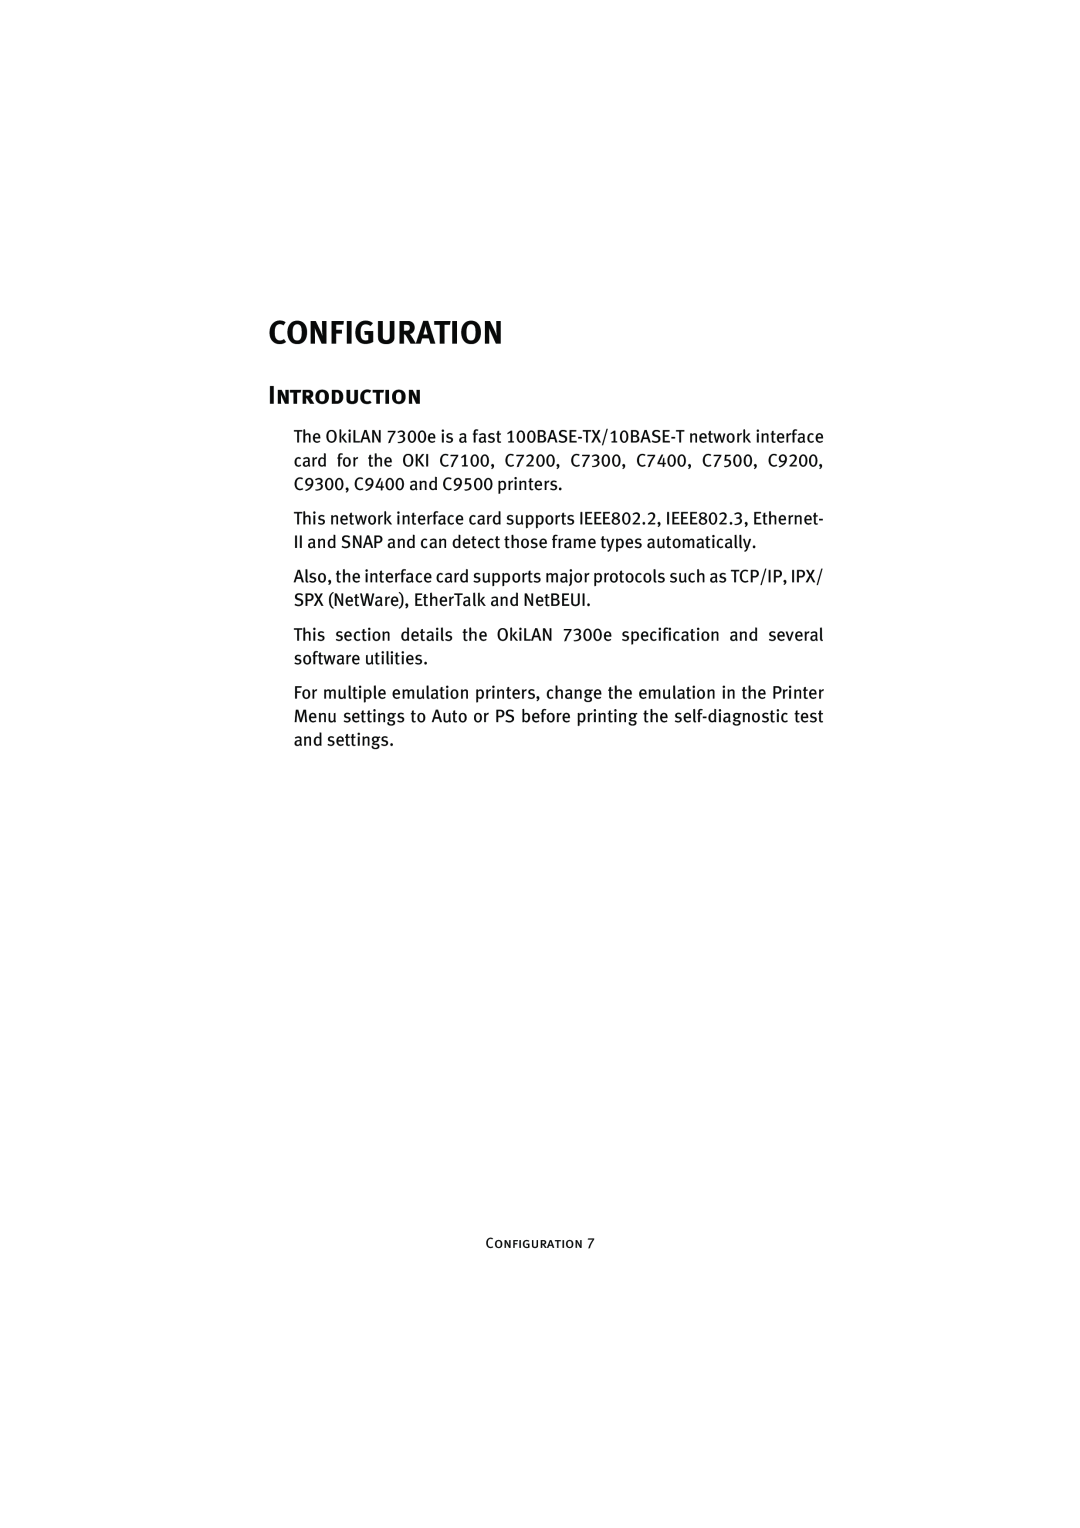 Oki 7300e manual Configuration, Introduction 